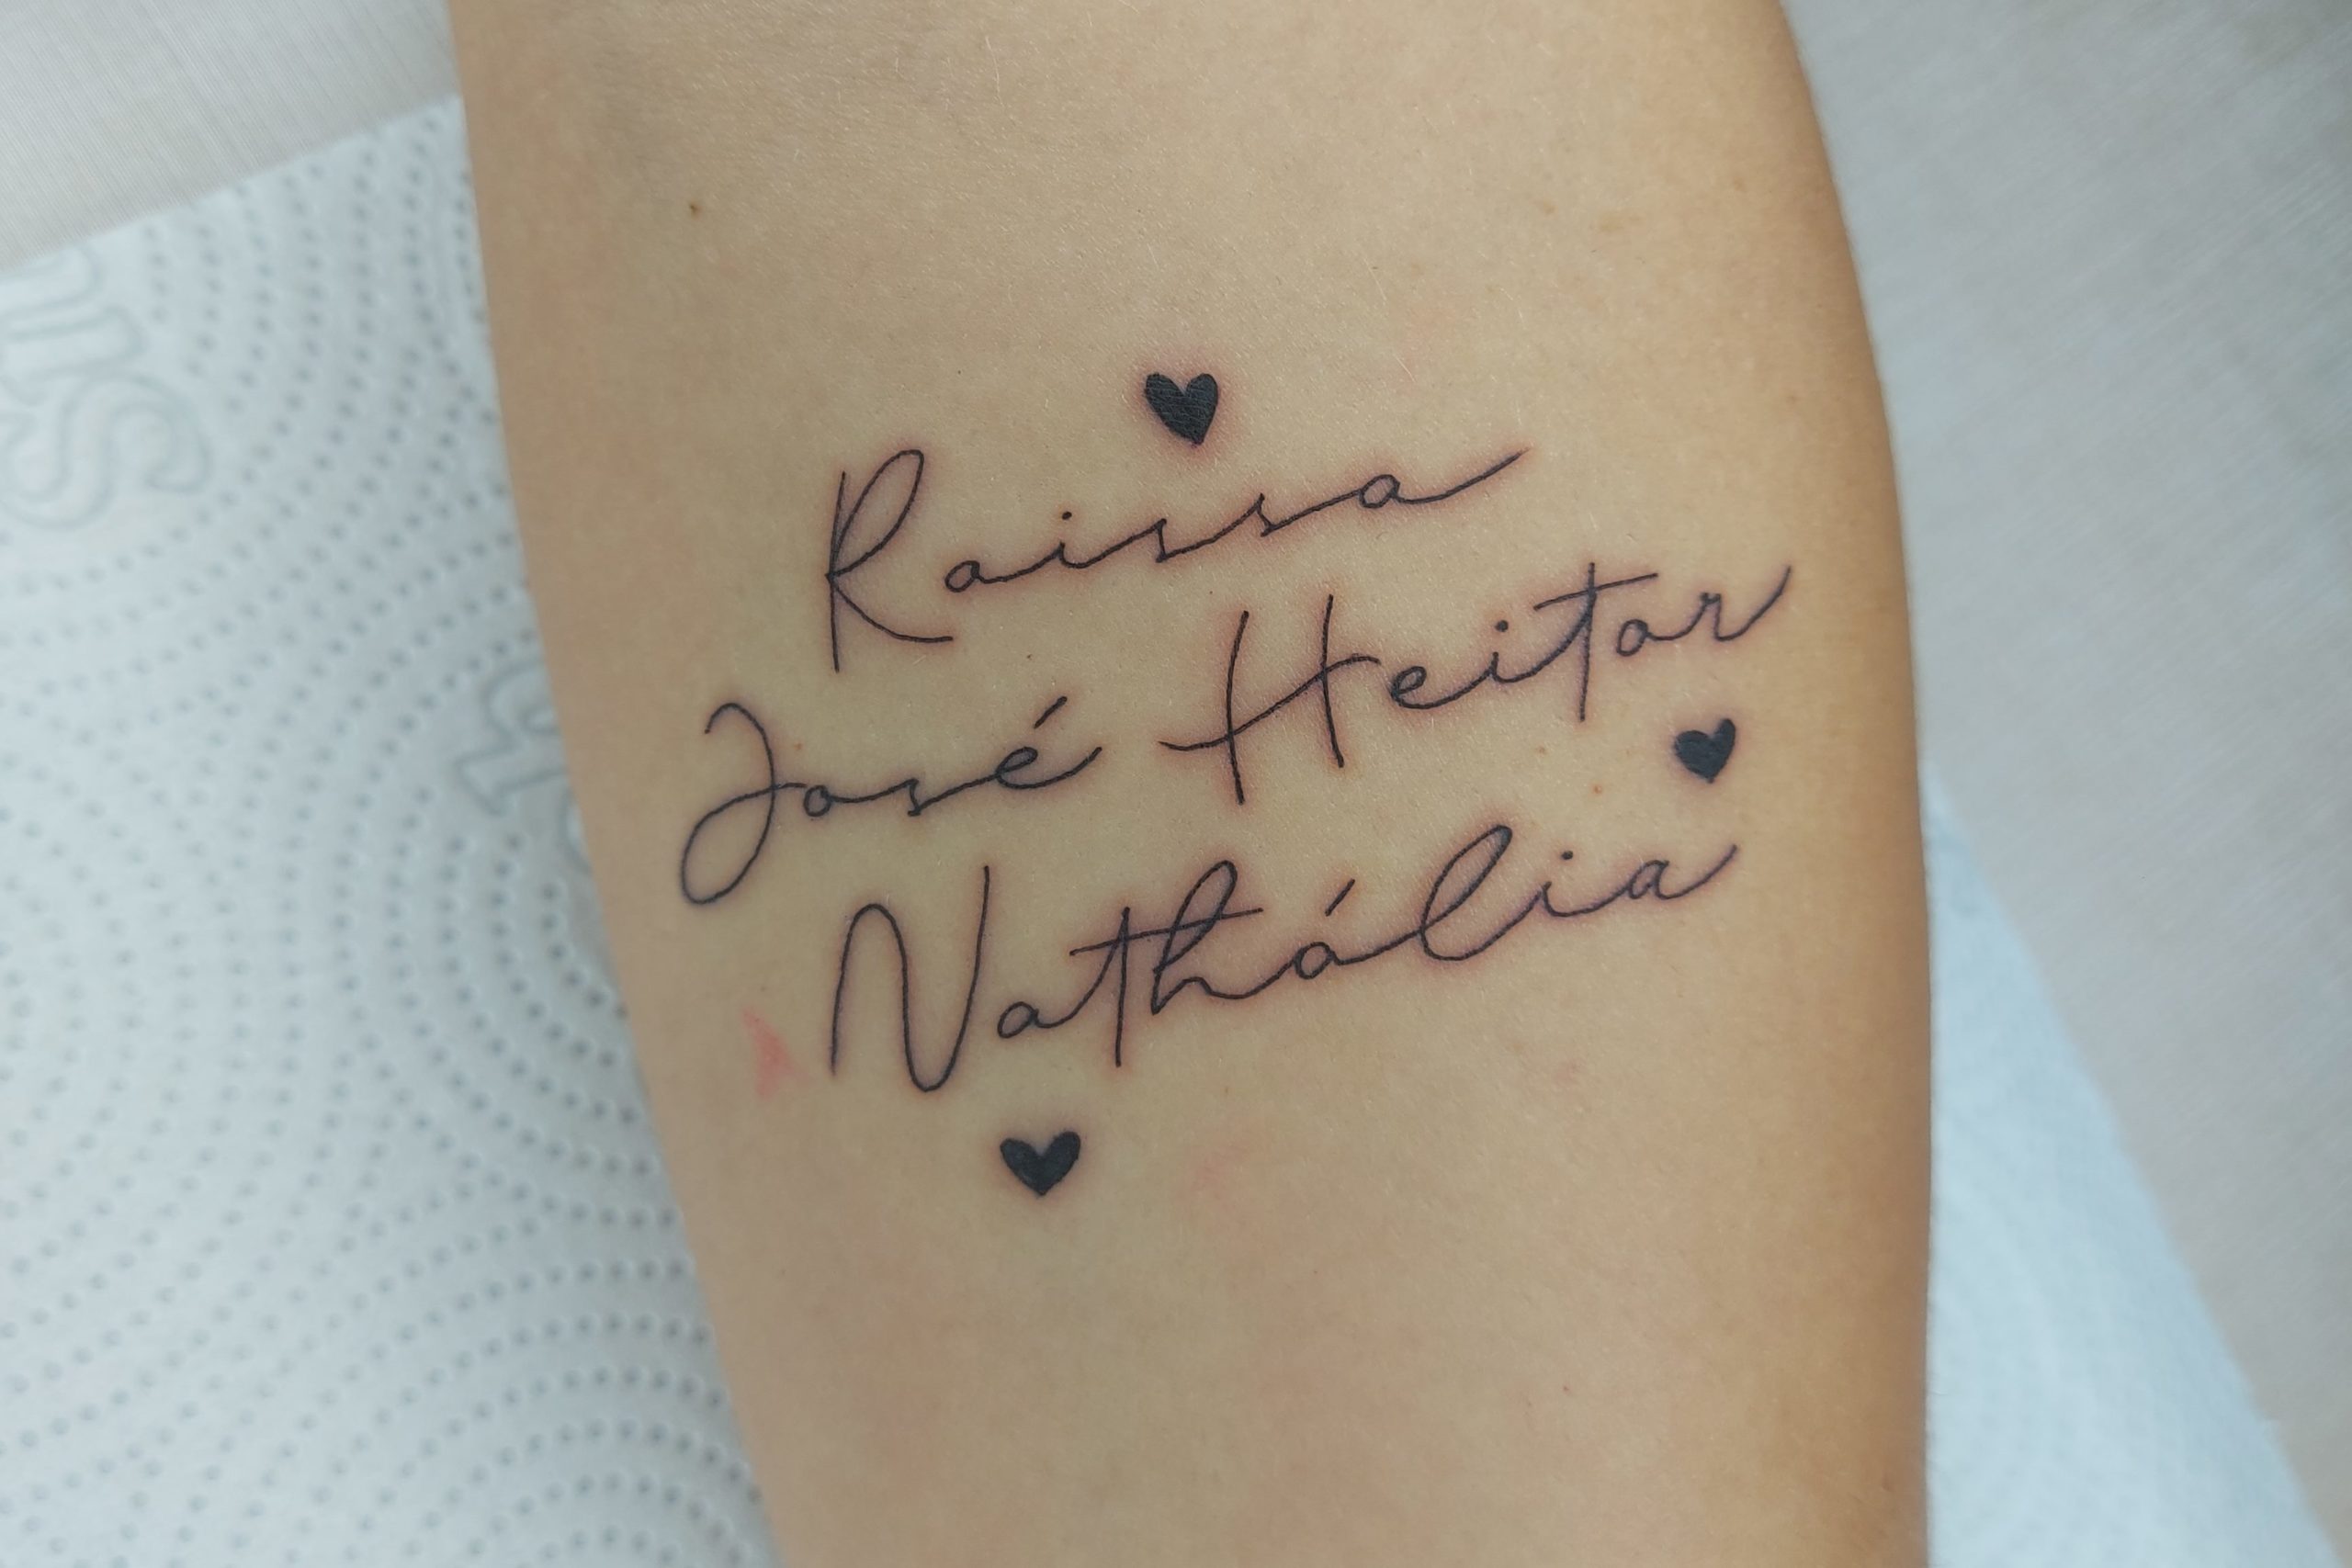 Tatuagem com os nomes Raissa, José Heitor e Nathália